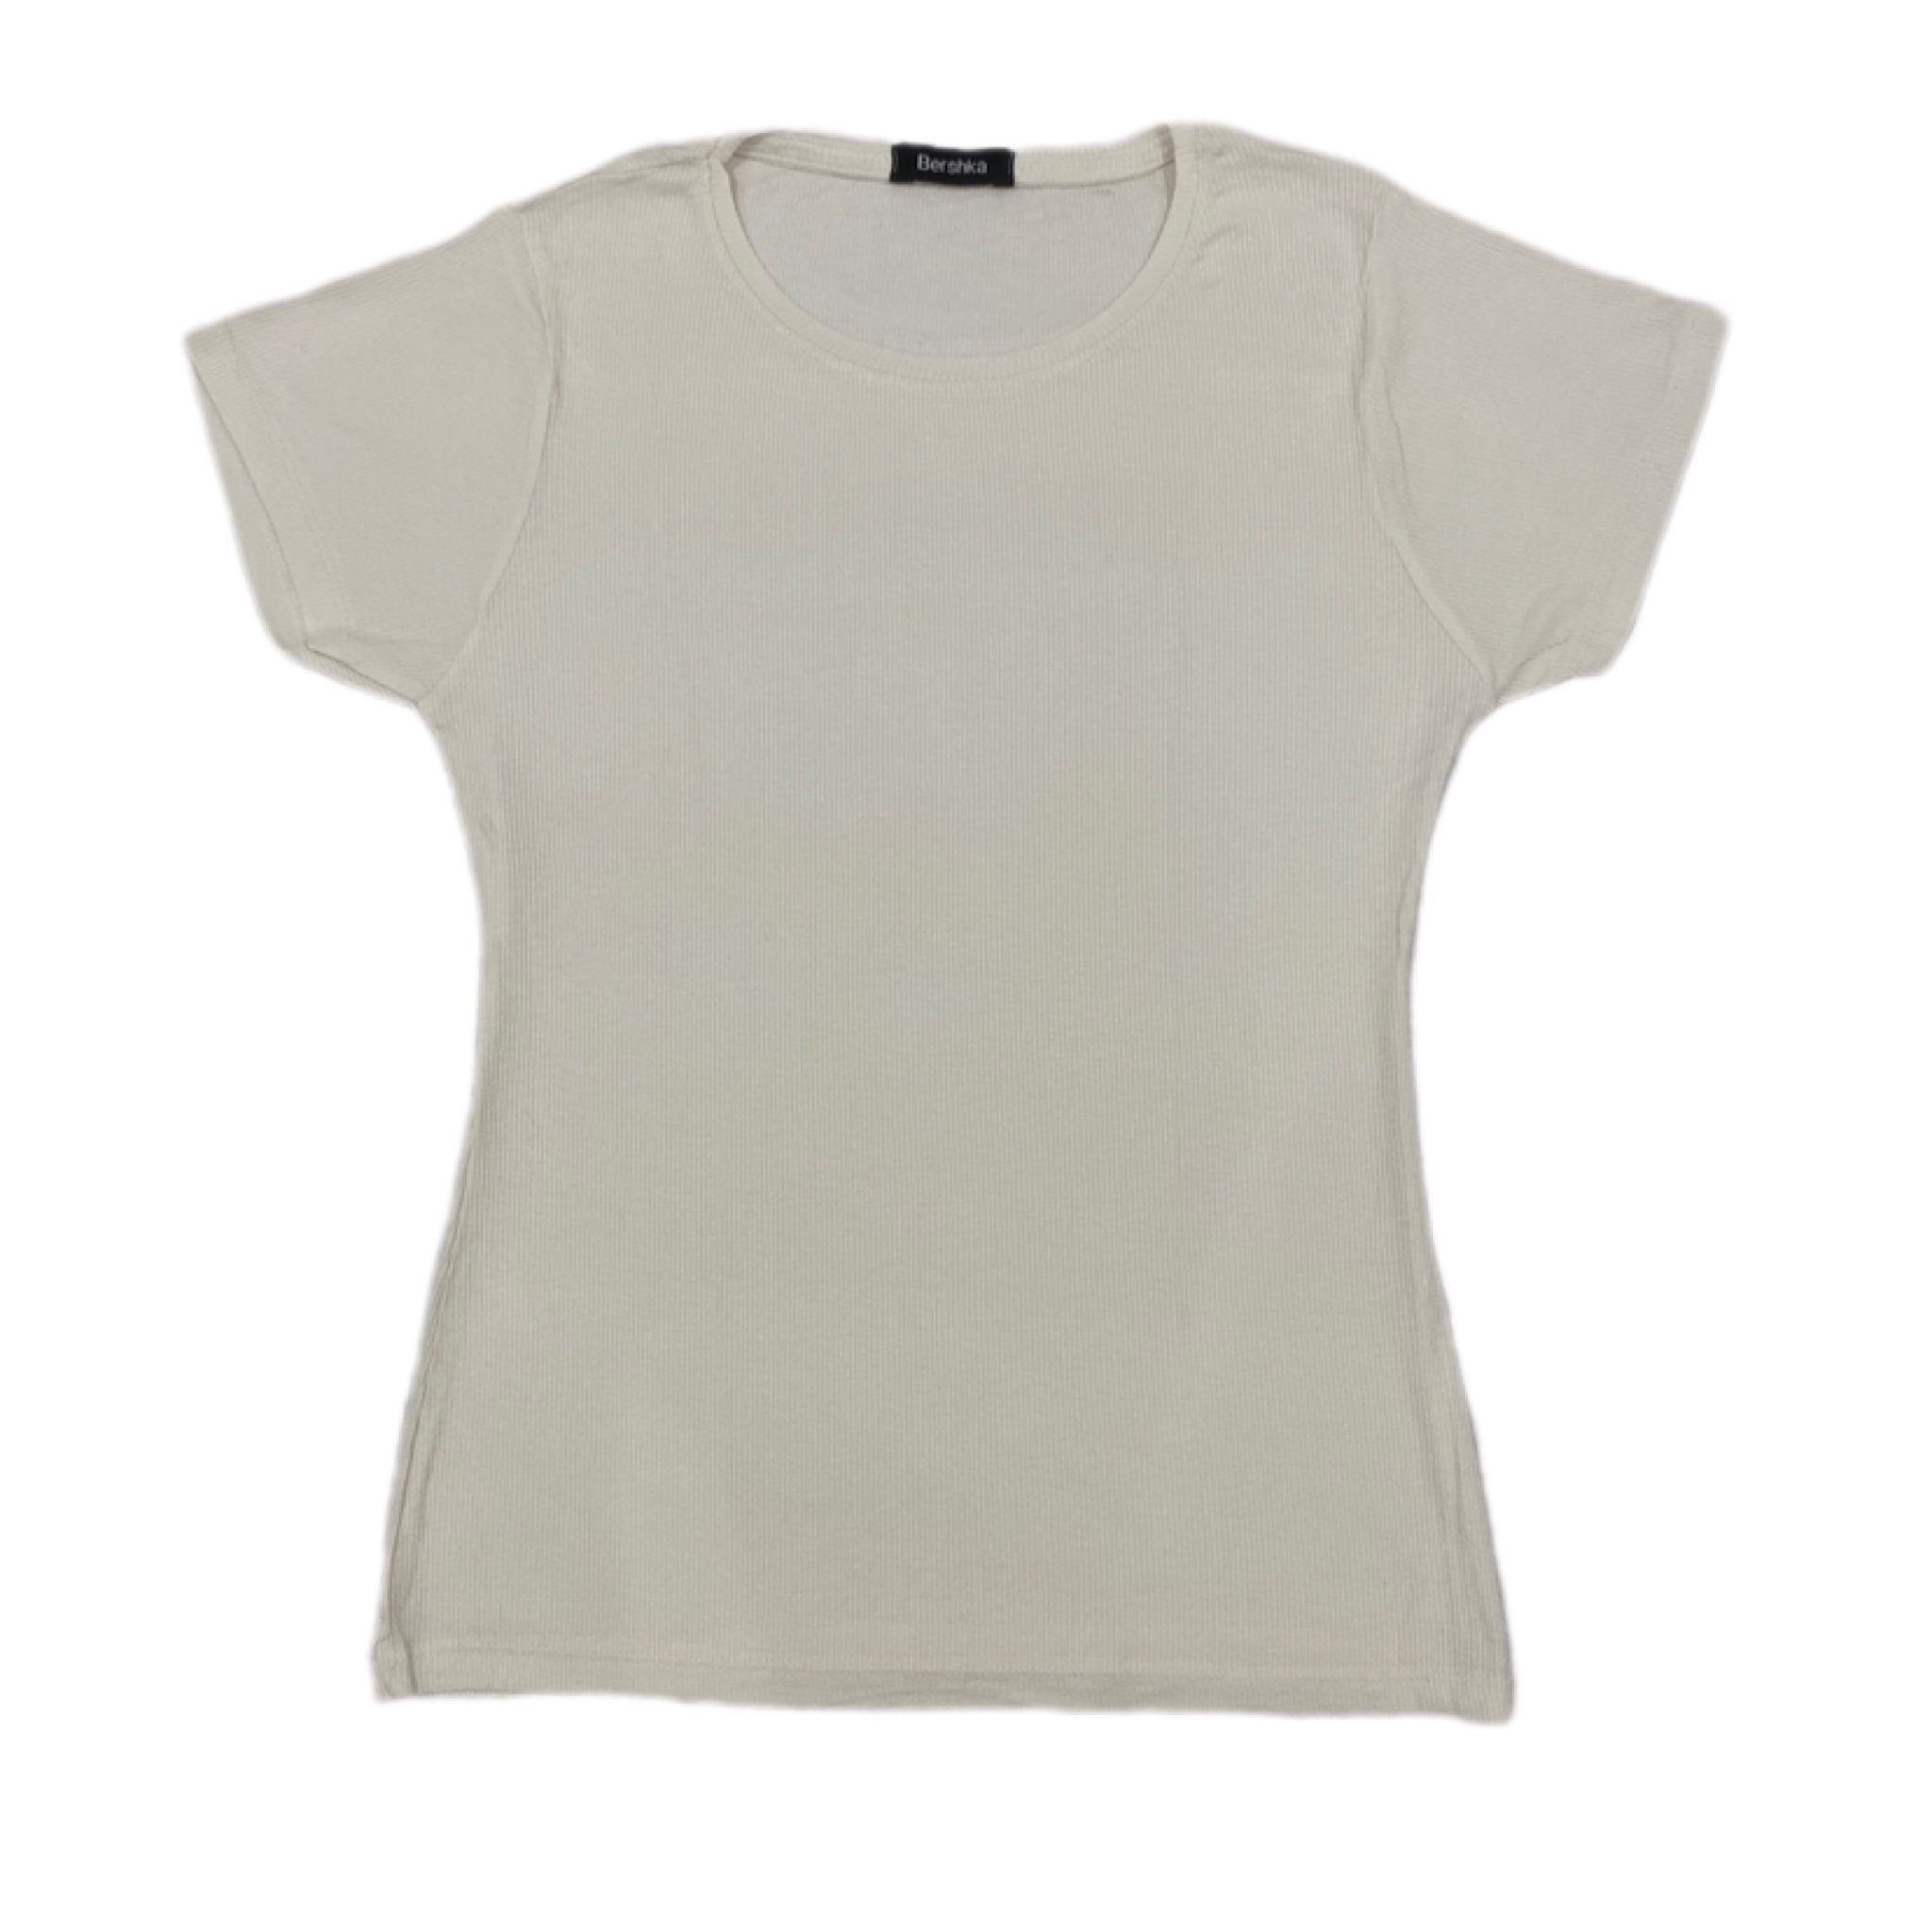 تی شرت آستین کوتاه زنانه مدل ساده کبریتی